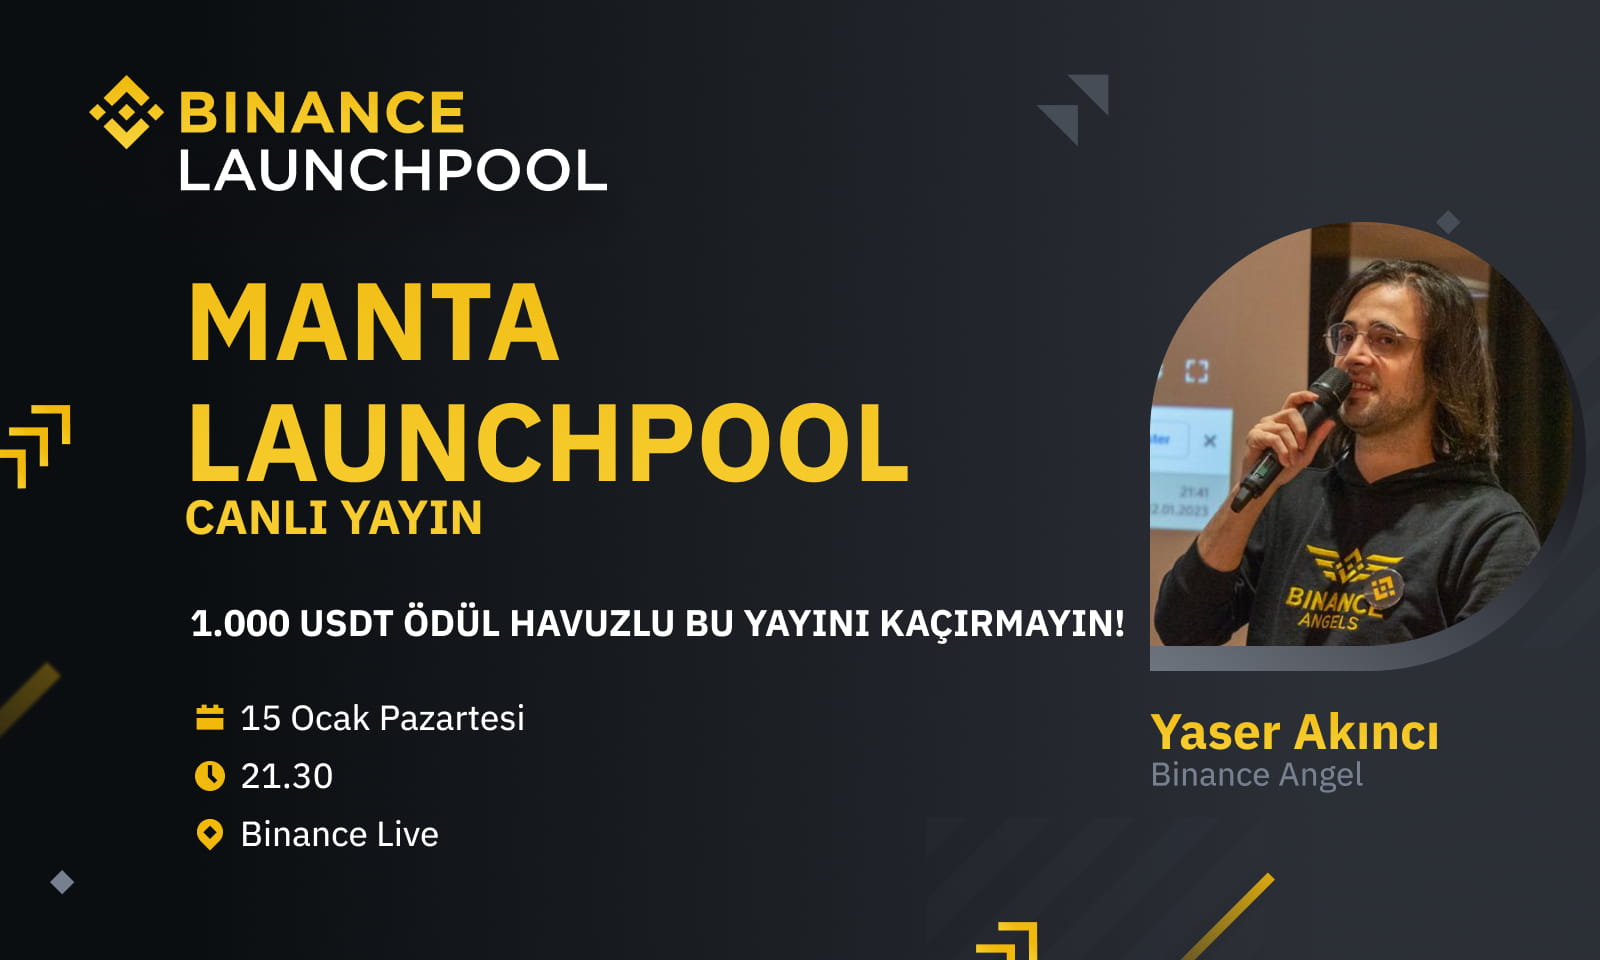 MANTA Launchpool Yayınına Katılın, Hem Öğrenin Hem de Ödül Kazanın!